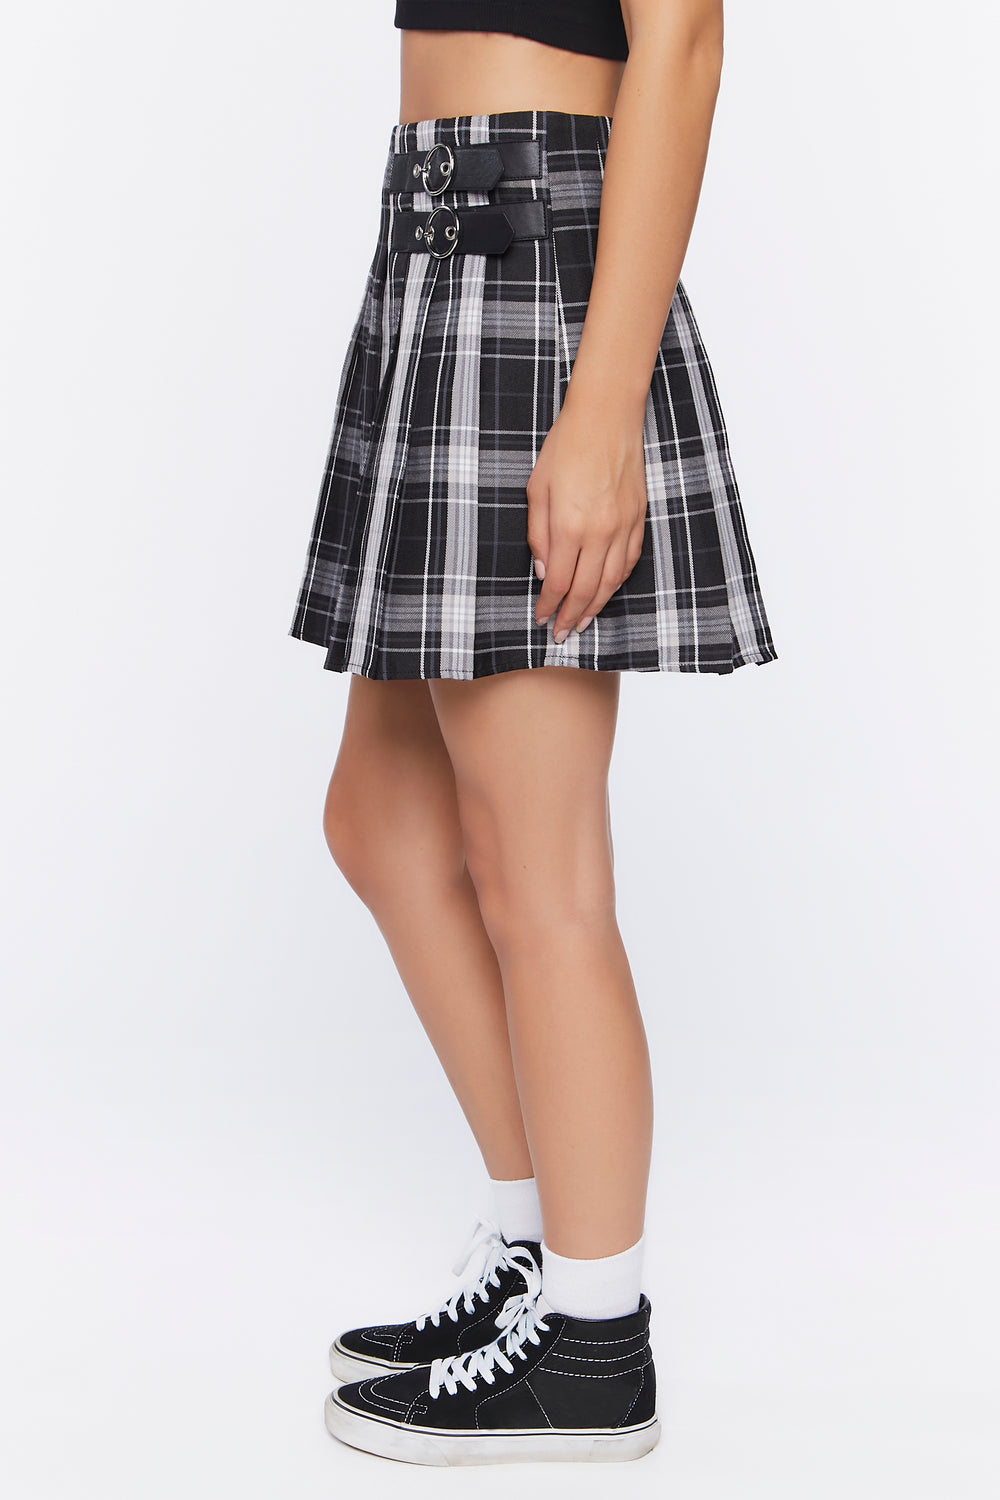 Dual-Buckle Pleated Plaid Skirt Black